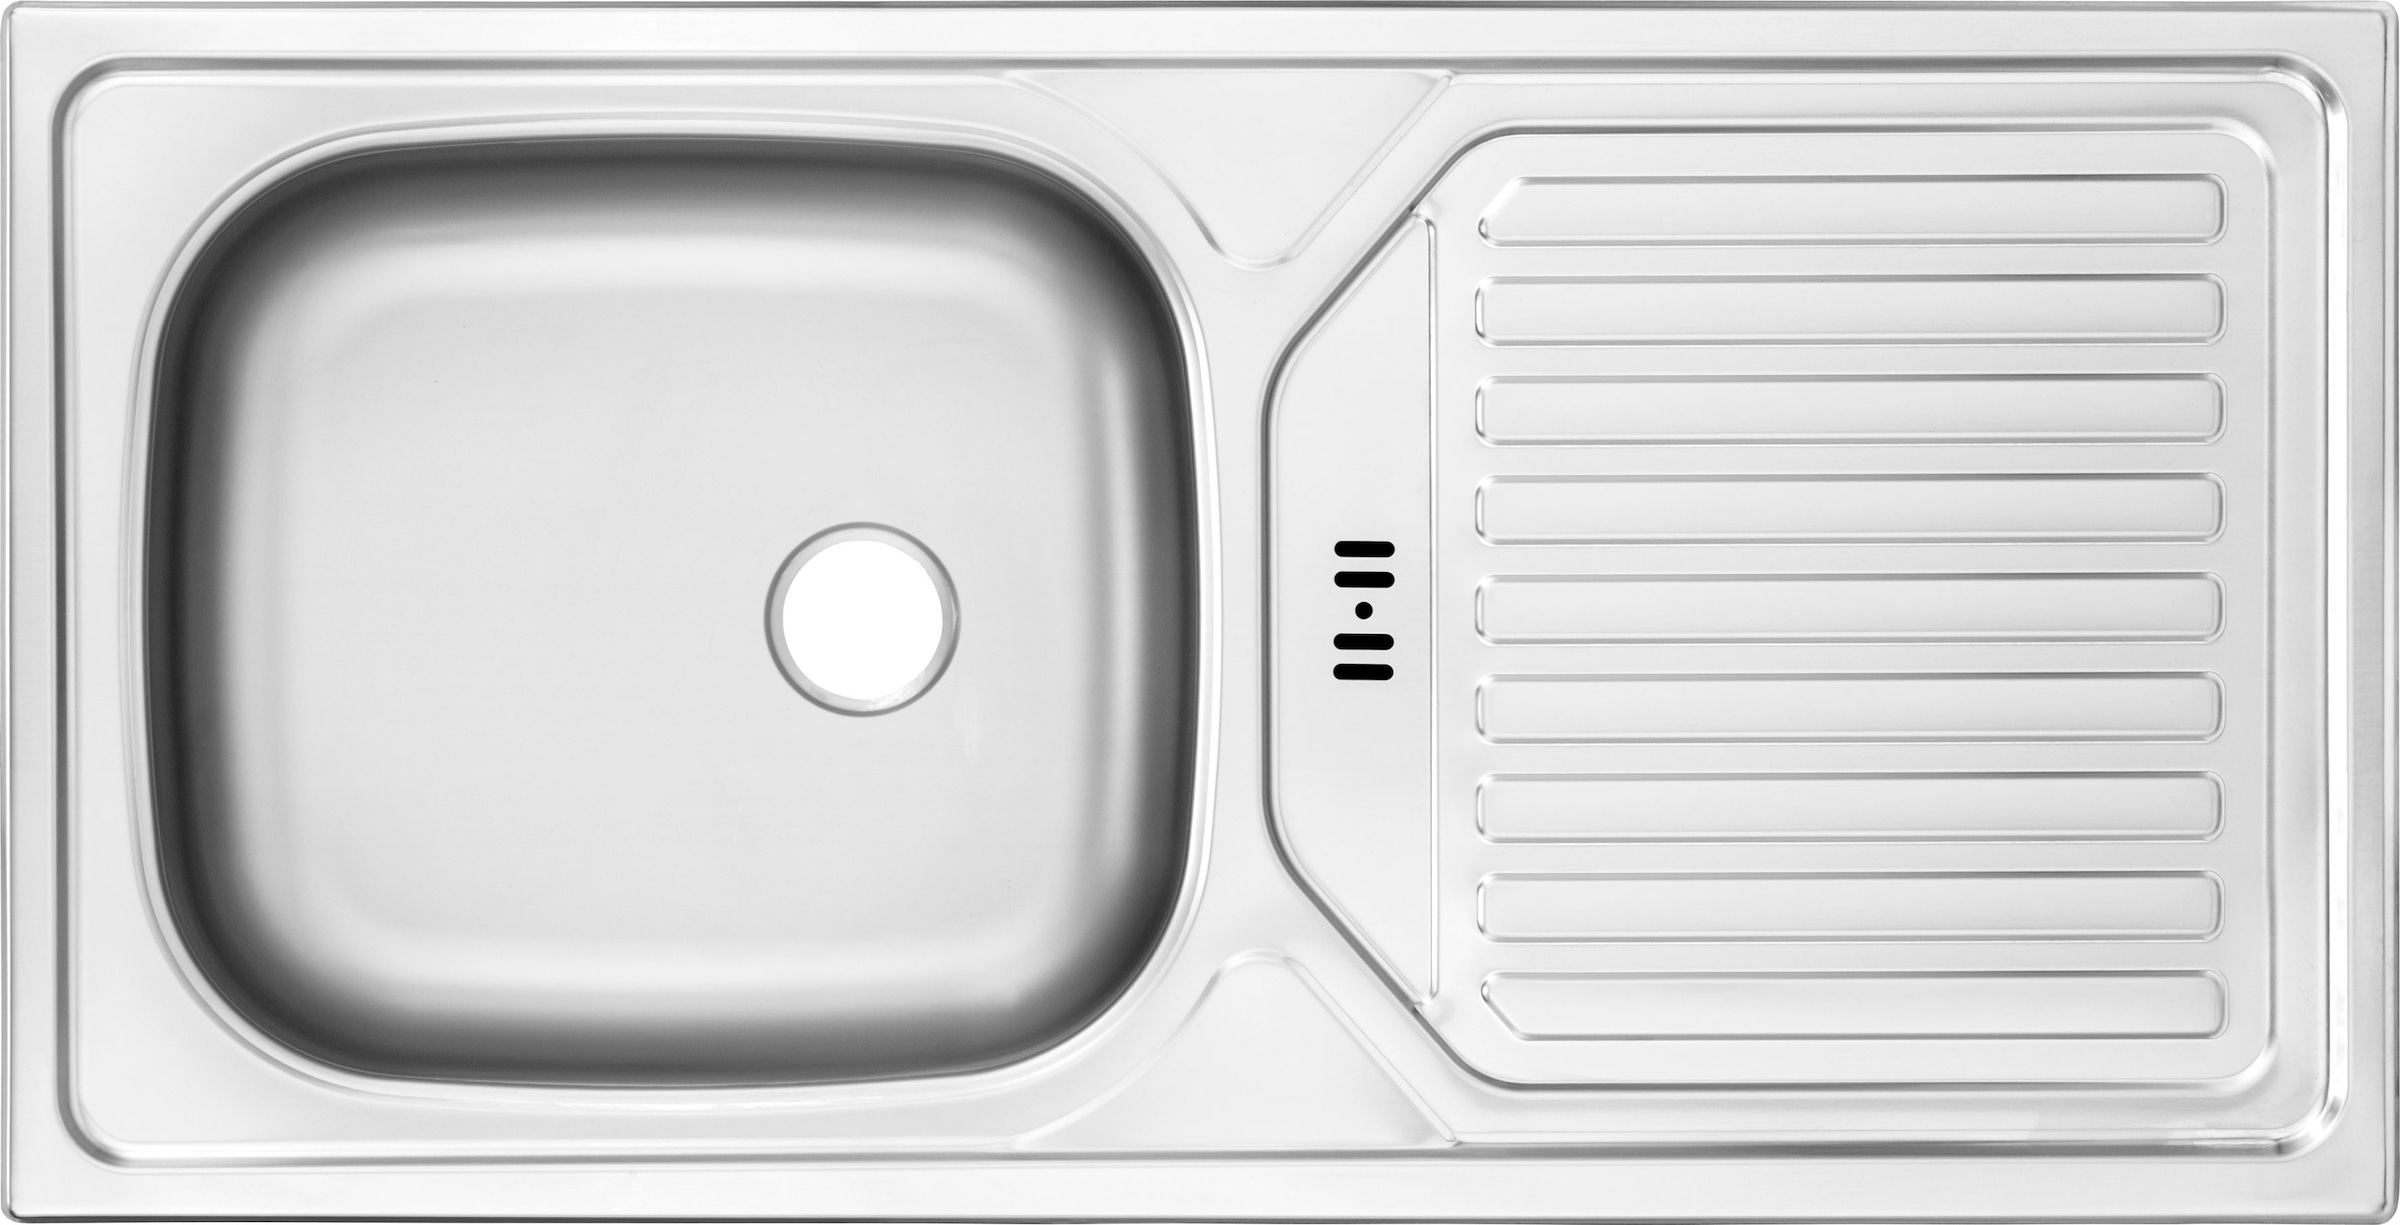 OPTIFIT Küchenzeile »Iver«, 300 cm breit, inklusive Elektrogeräte der Marke  HANSEATIC auf Rechnung kaufen